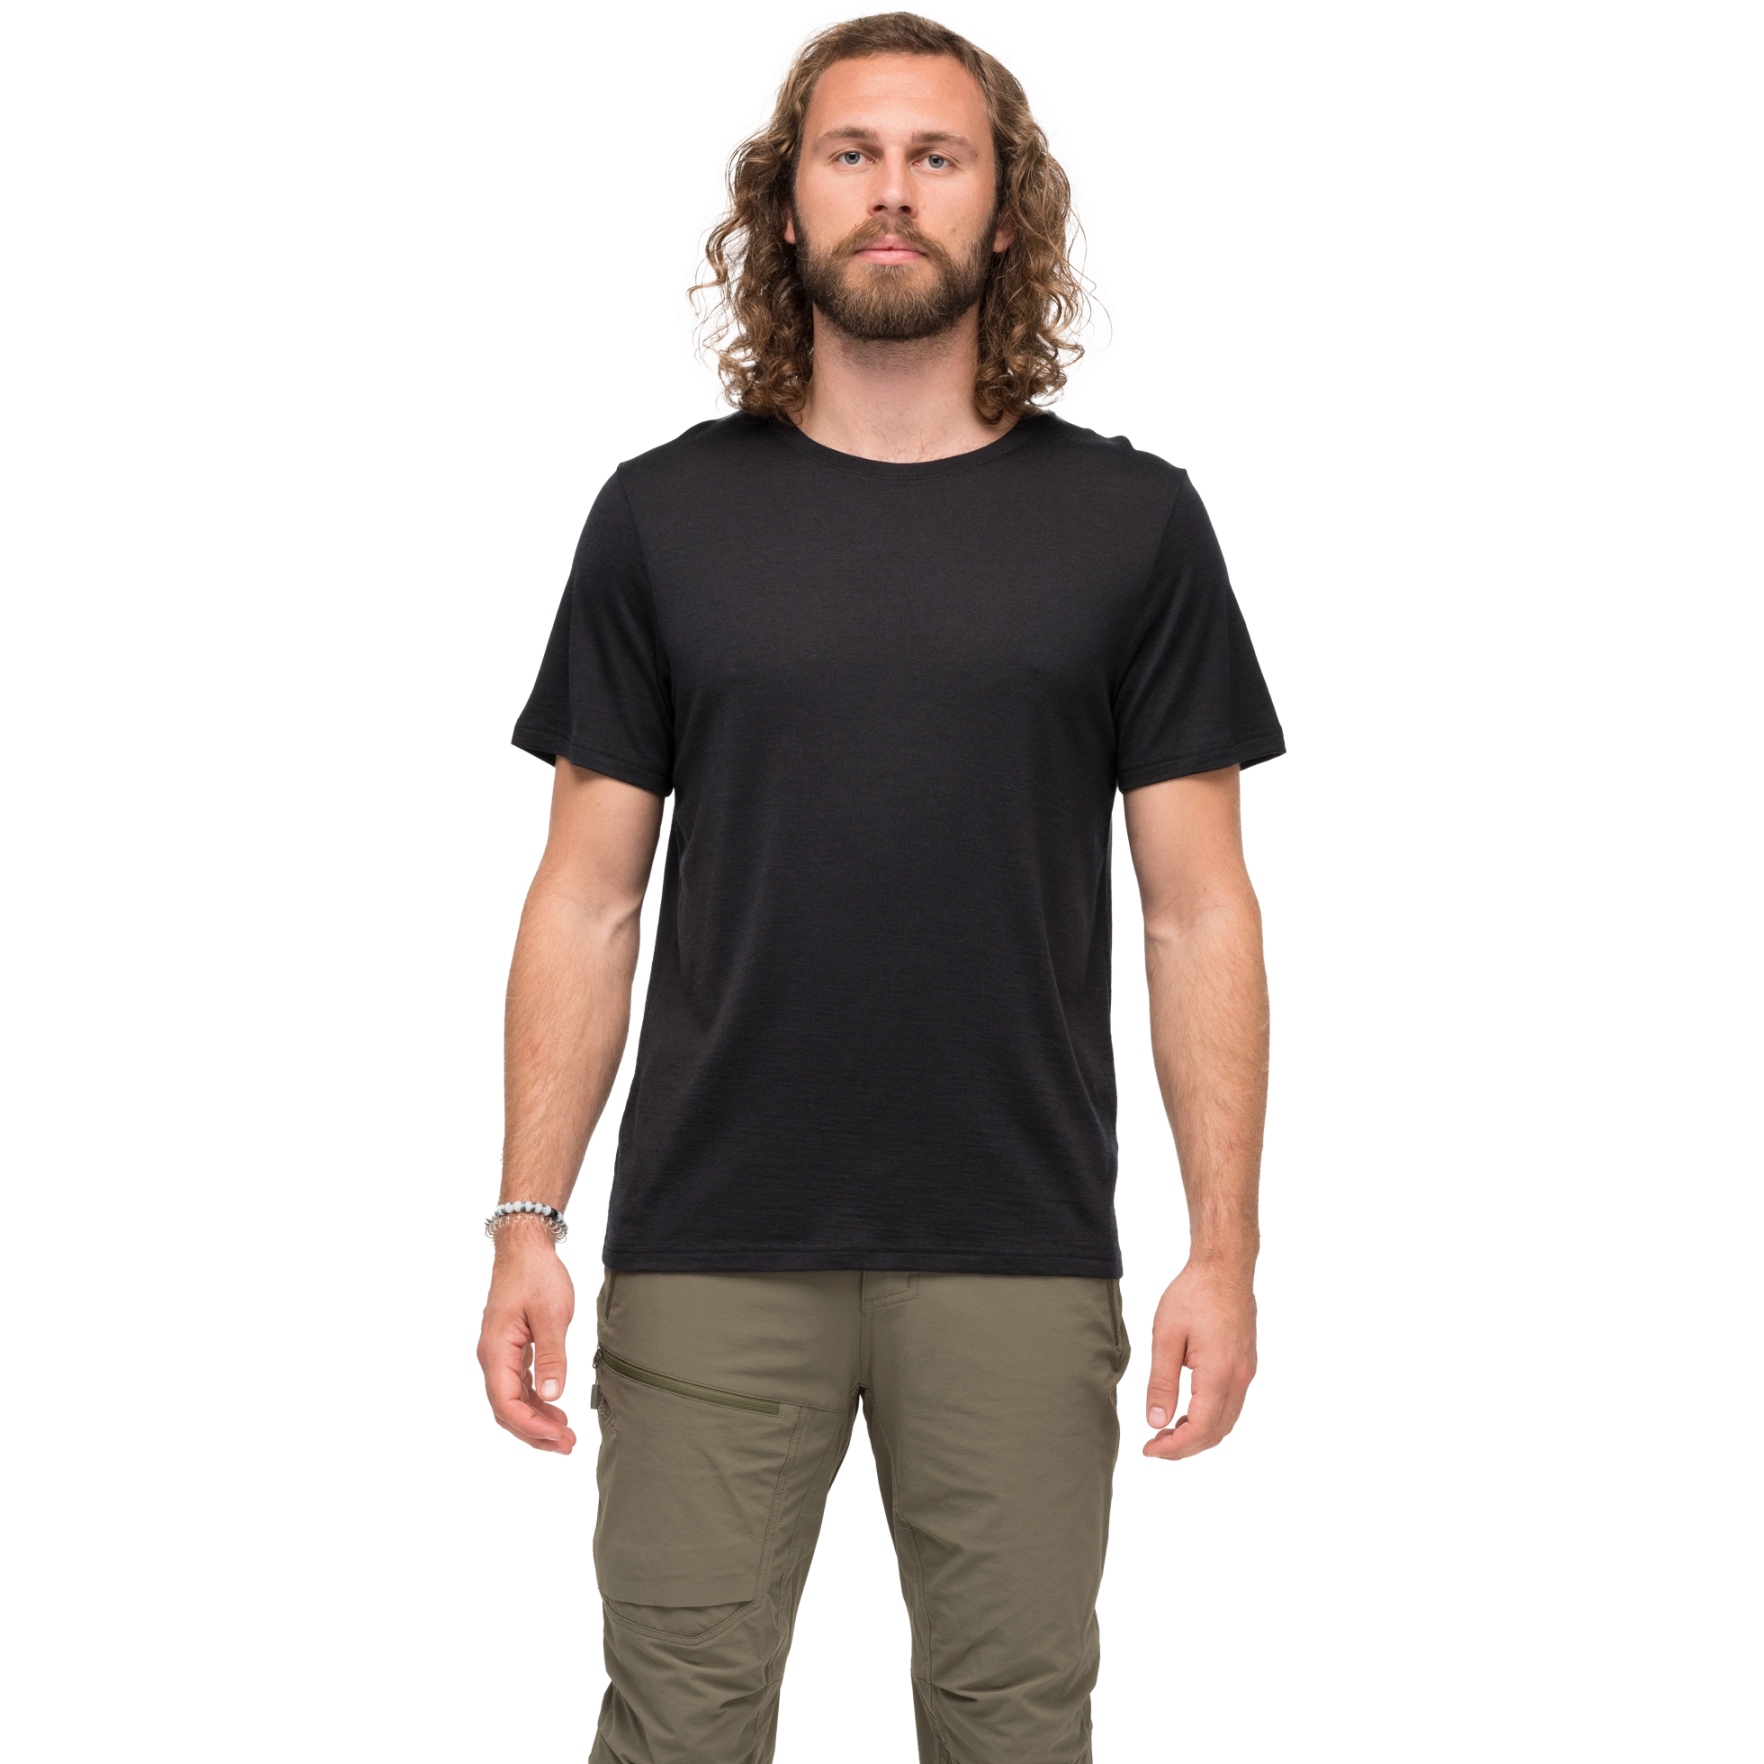 Produktbild von Bergans Whenever Merino T-Shirt Herren - schwarz